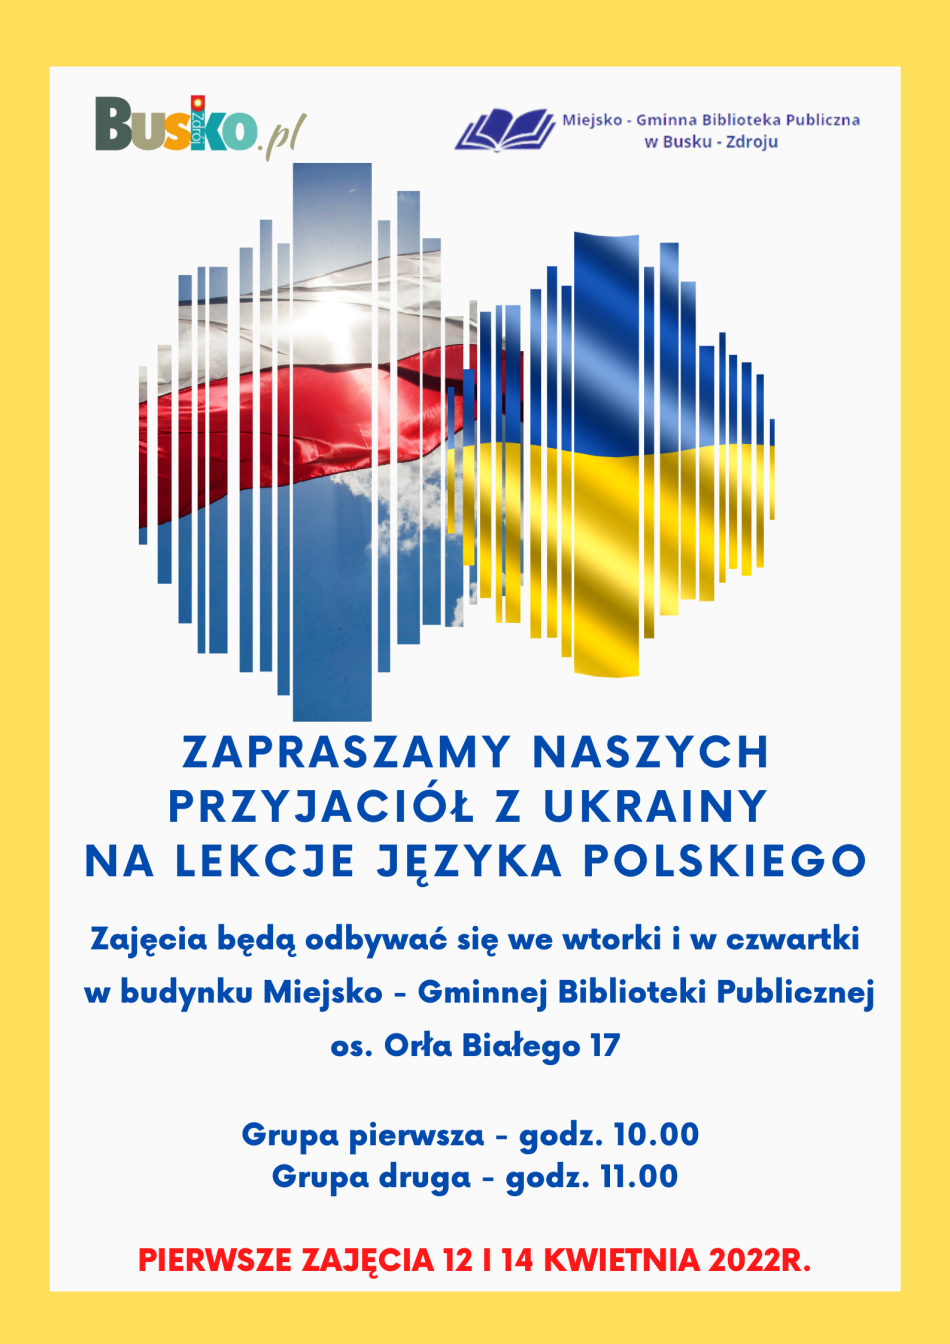 Miejsko - Gminna Biblioteka Publiczna w Busku - Zdroju zaprasza na lekcje języka polskiego dla obywateli Ukrainy